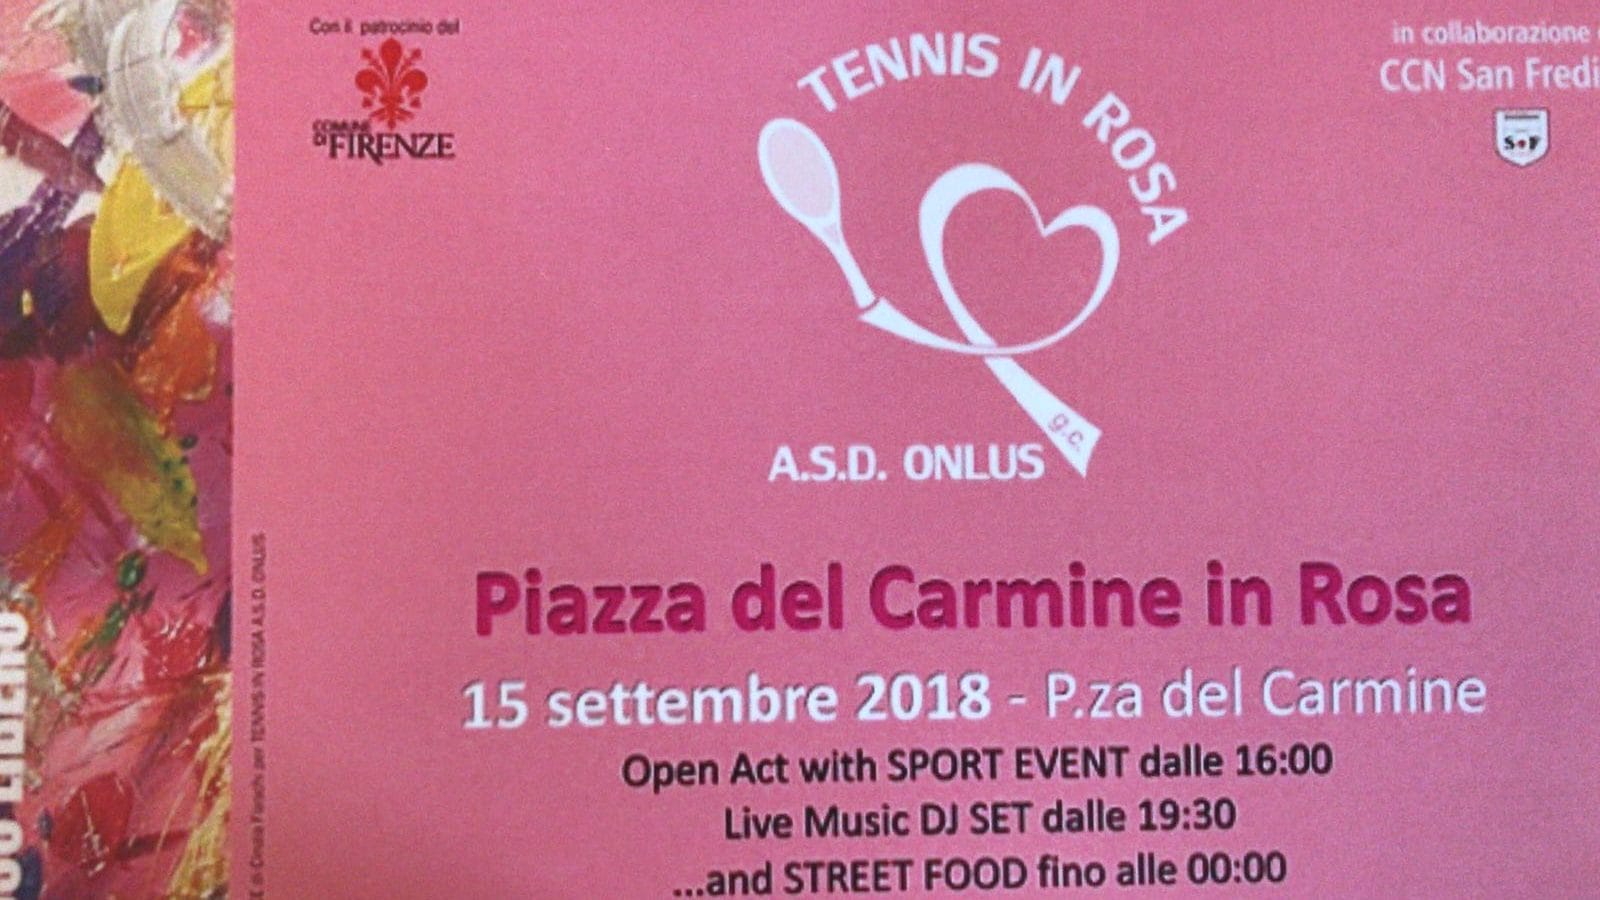 Tennis in rosa: sport e solidarietà uniti per la lotta contro tumore al seno